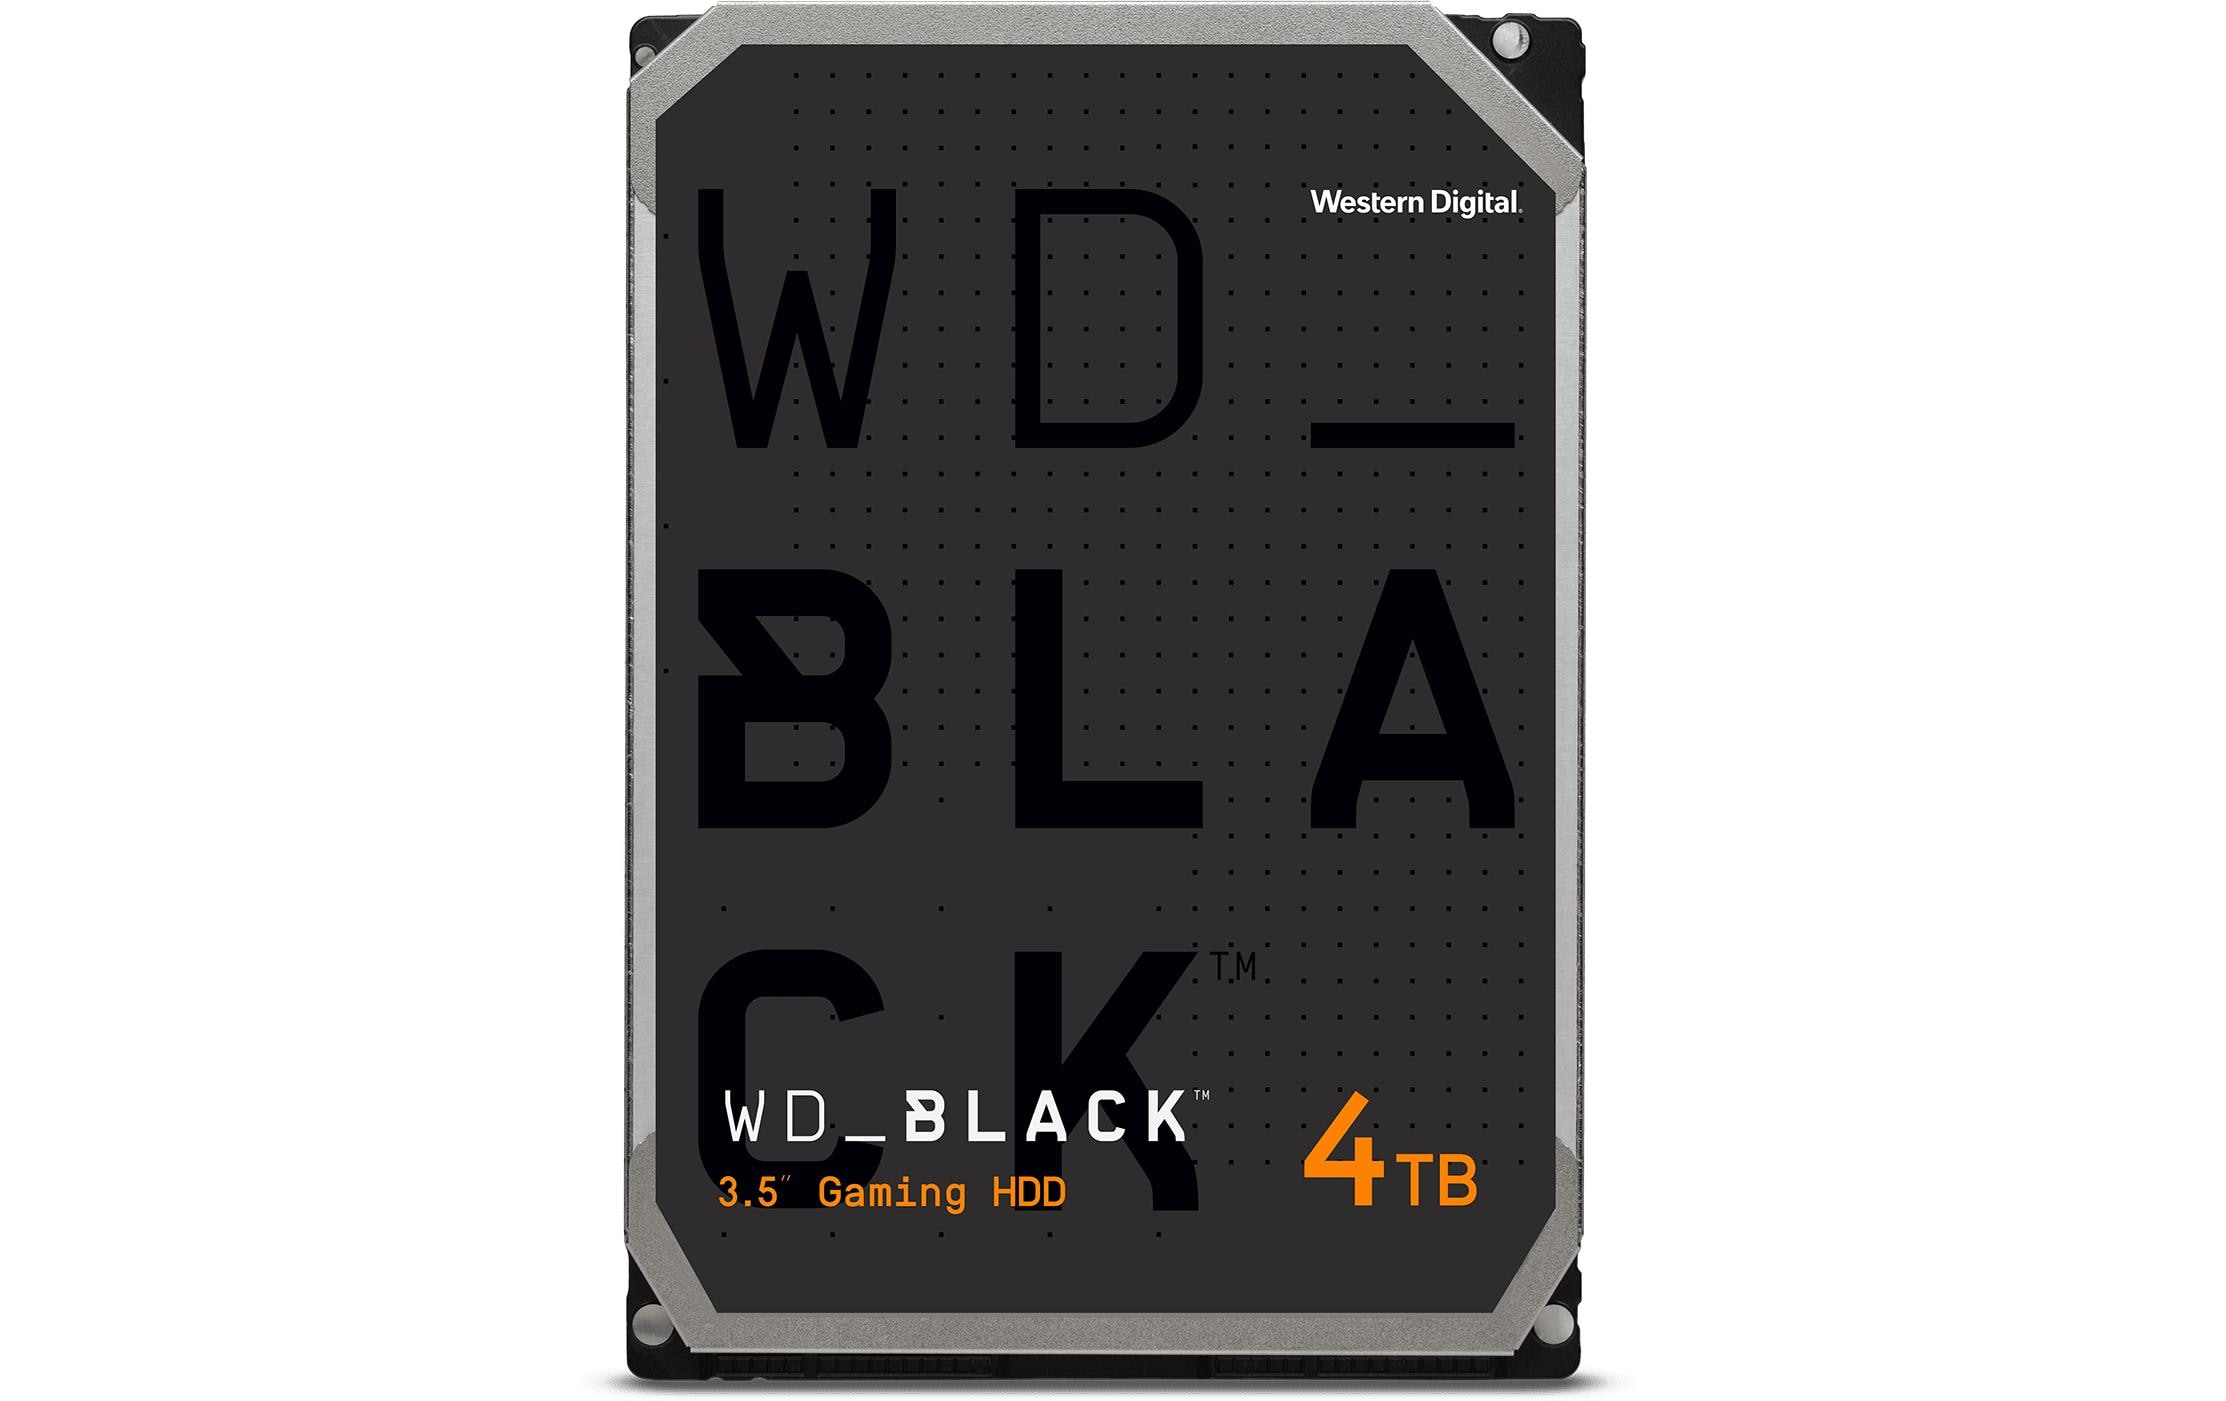 WD Black Harddisk WD Black 3.5 SATA 4 TB